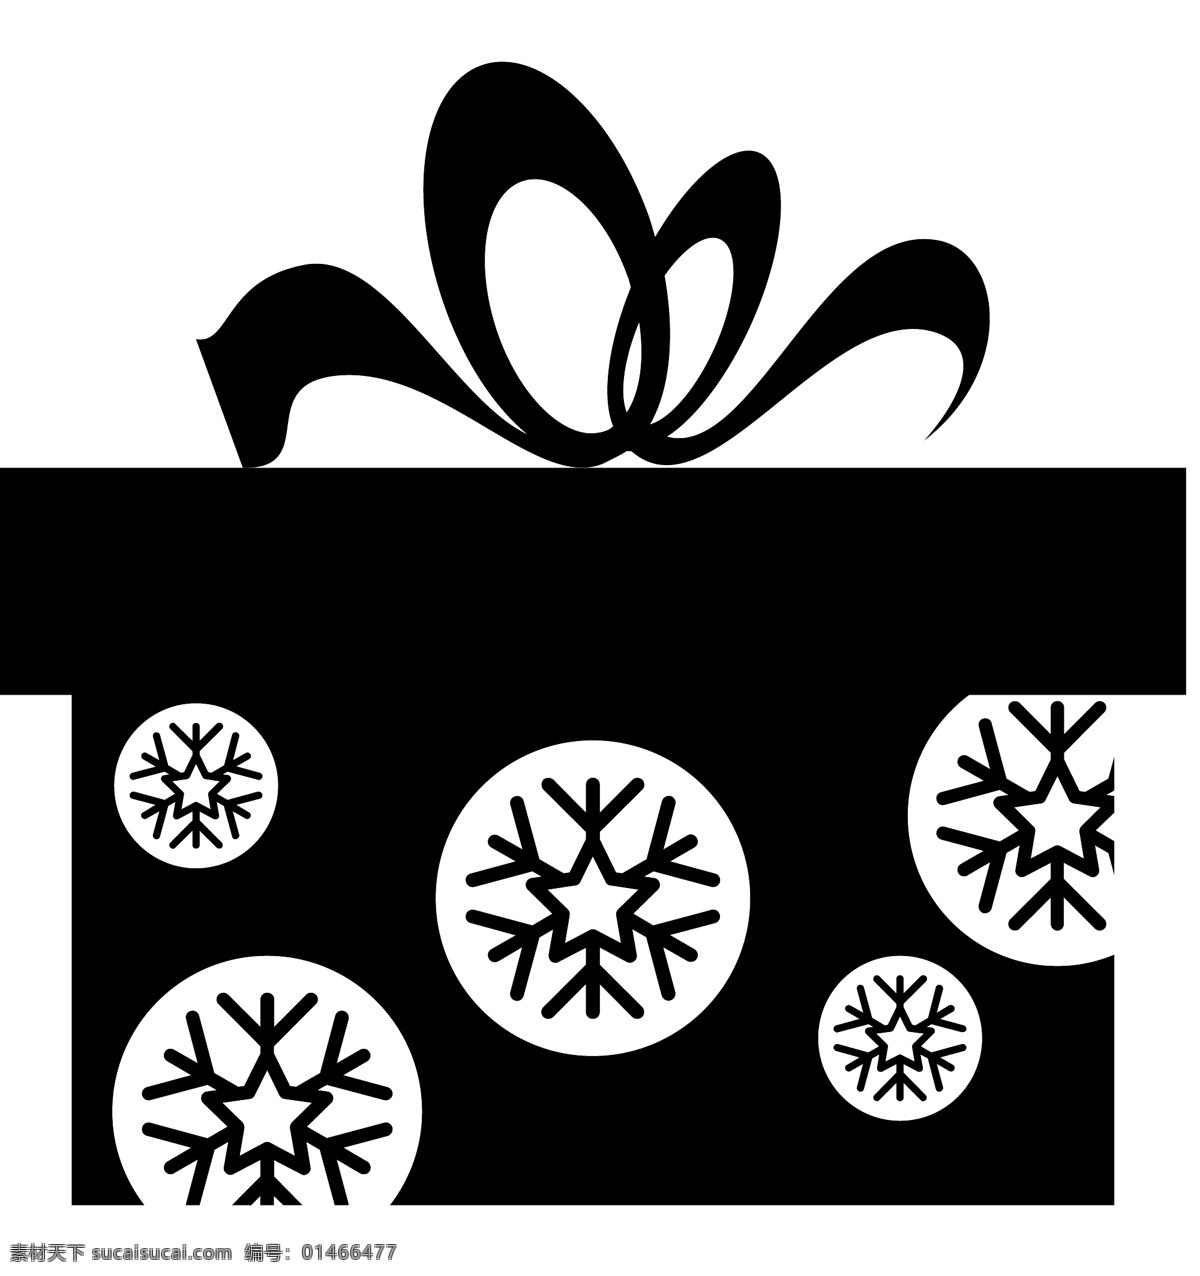 节日 礼品盒 icon 图标 线性 扁平 手绘 单色 多色 简约 精美 可爱 礼物盒 礼物 礼品 图标素材